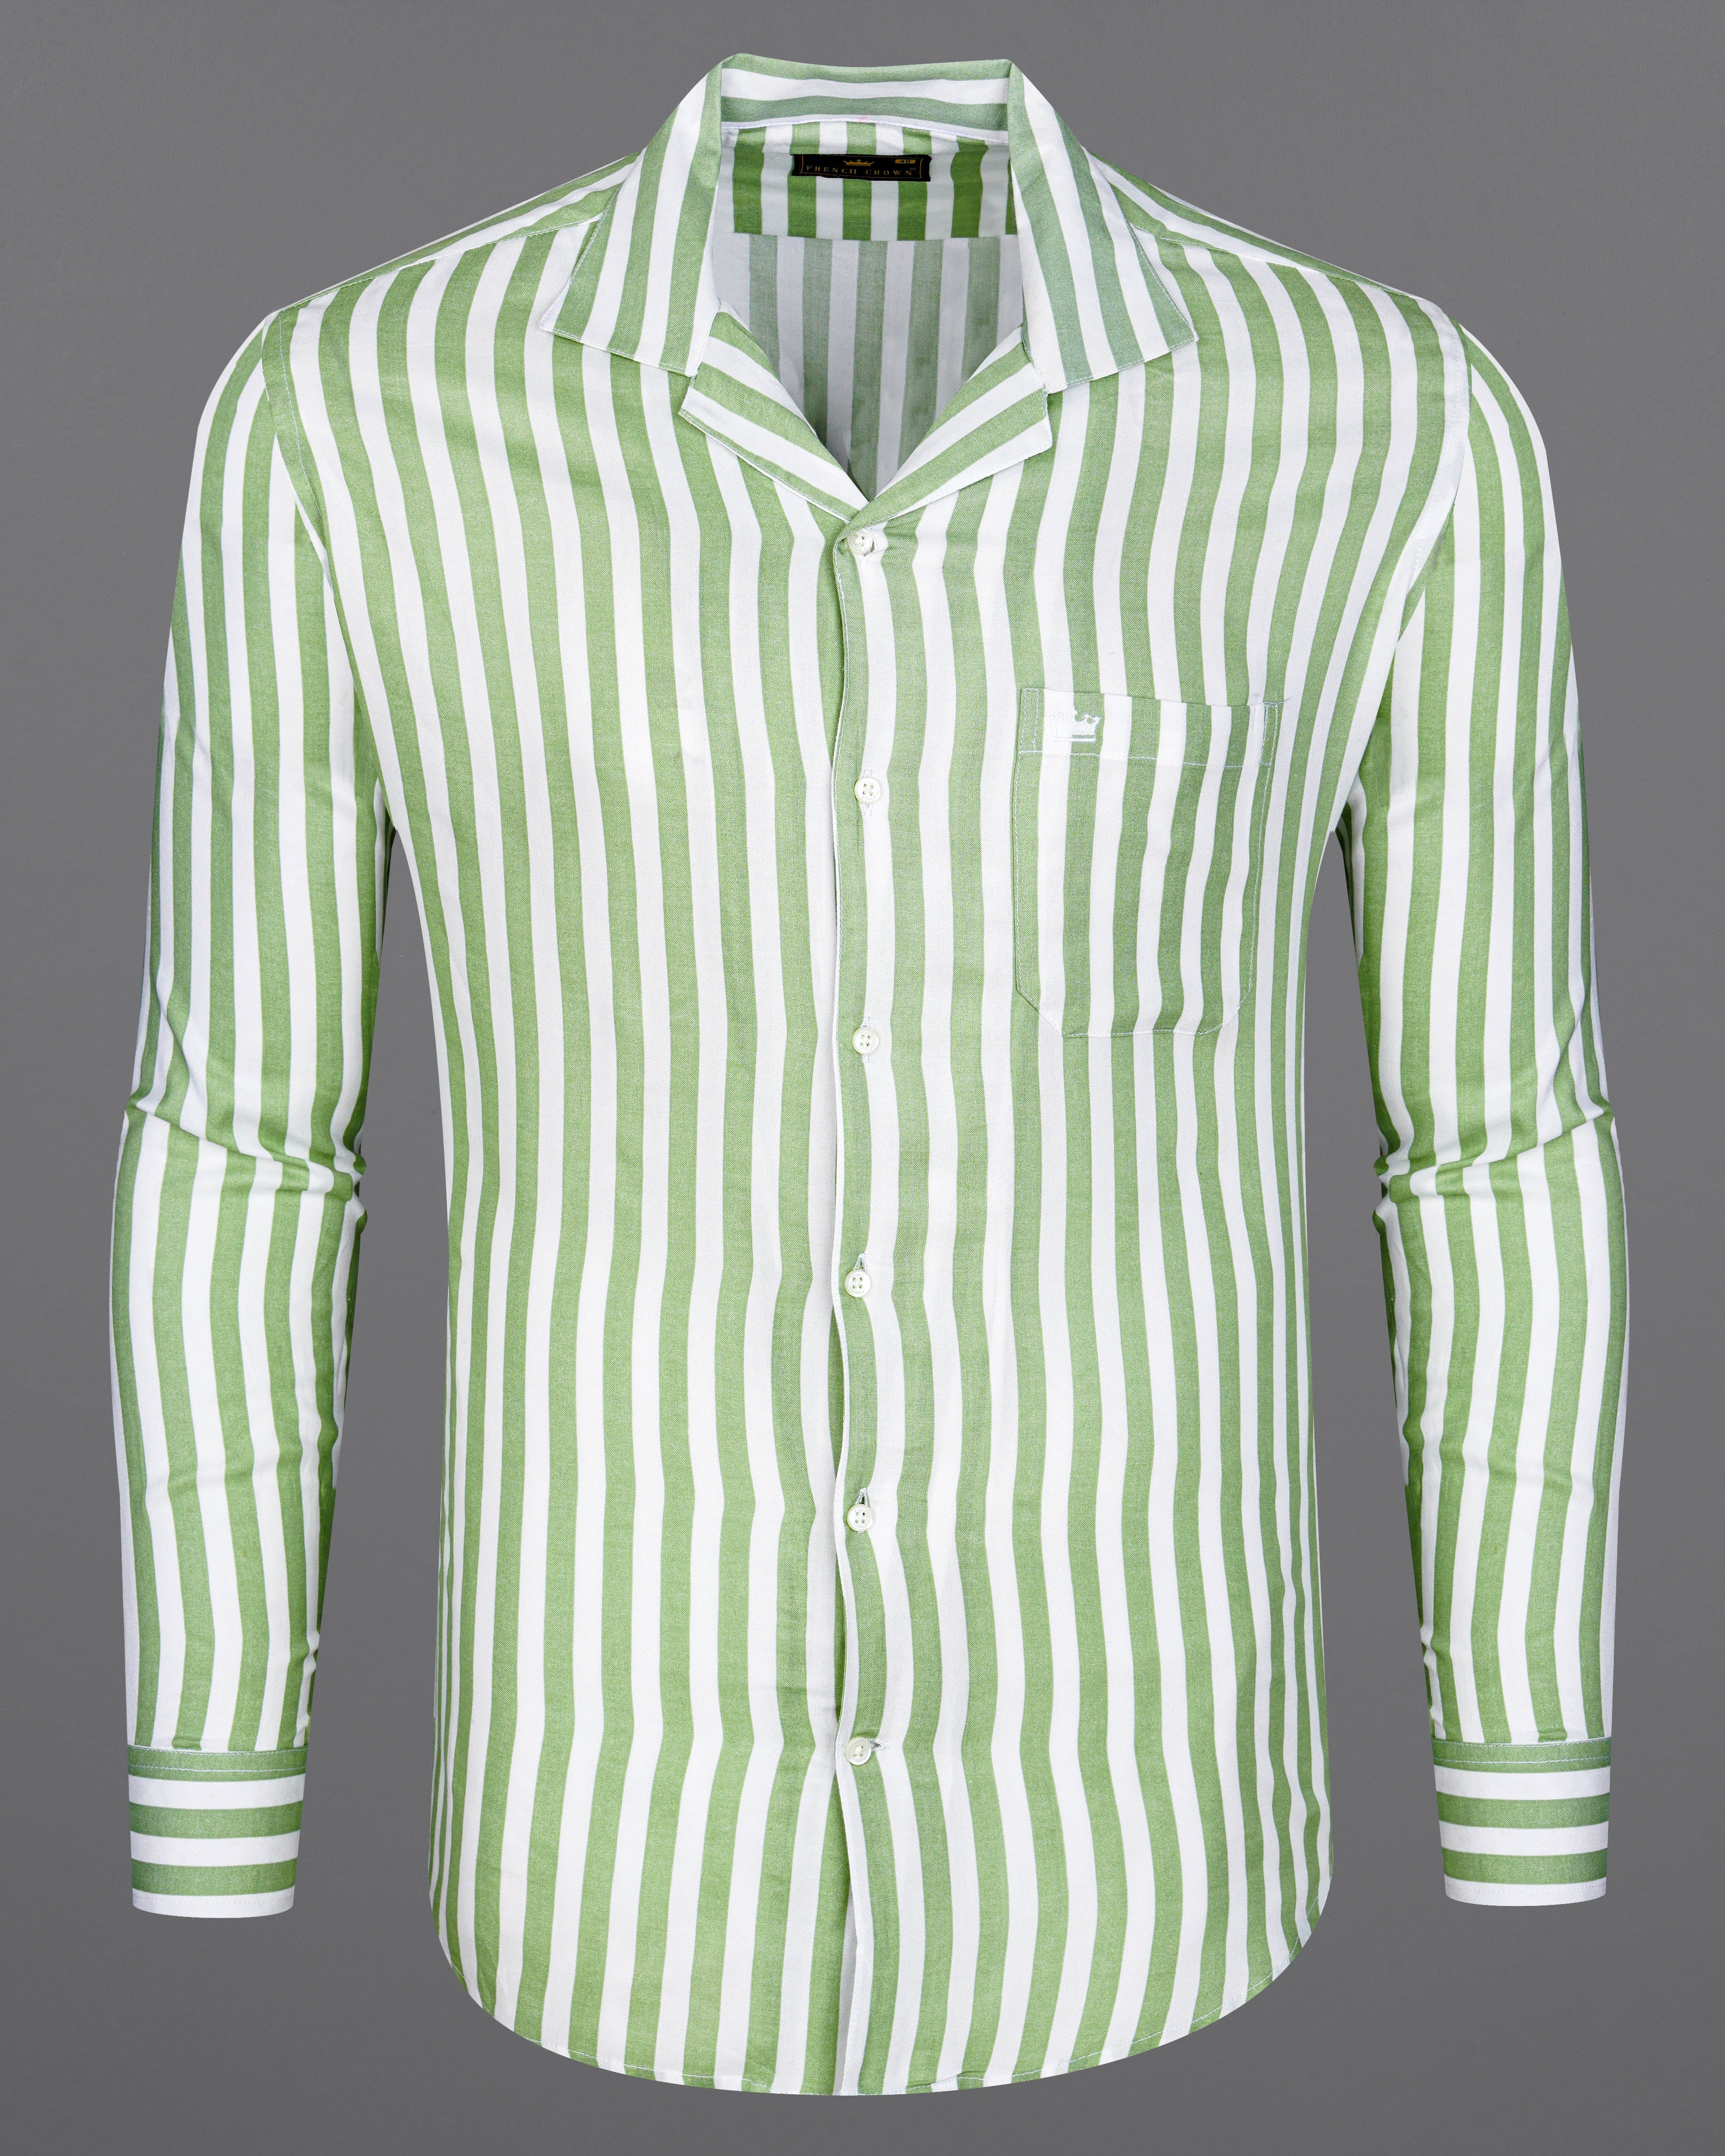 Bright White with Lichen Green Striped Premium Tencel Shirt  8616-CC-38,8616-CC-H-38,8616-CC-39,8616-CC-H-39,8616-CC-40,8616-CC-H-40,8616-CC-42,8616-CC-H-42,8616-CC-44,8616-CC-H-44,8616-CC-46,8616-CC-H-46,8616-CC-48,8616-CC-H-48,8616-CC-50,8616-CC-H-50,8616-CC-52,8616-CC-H-52